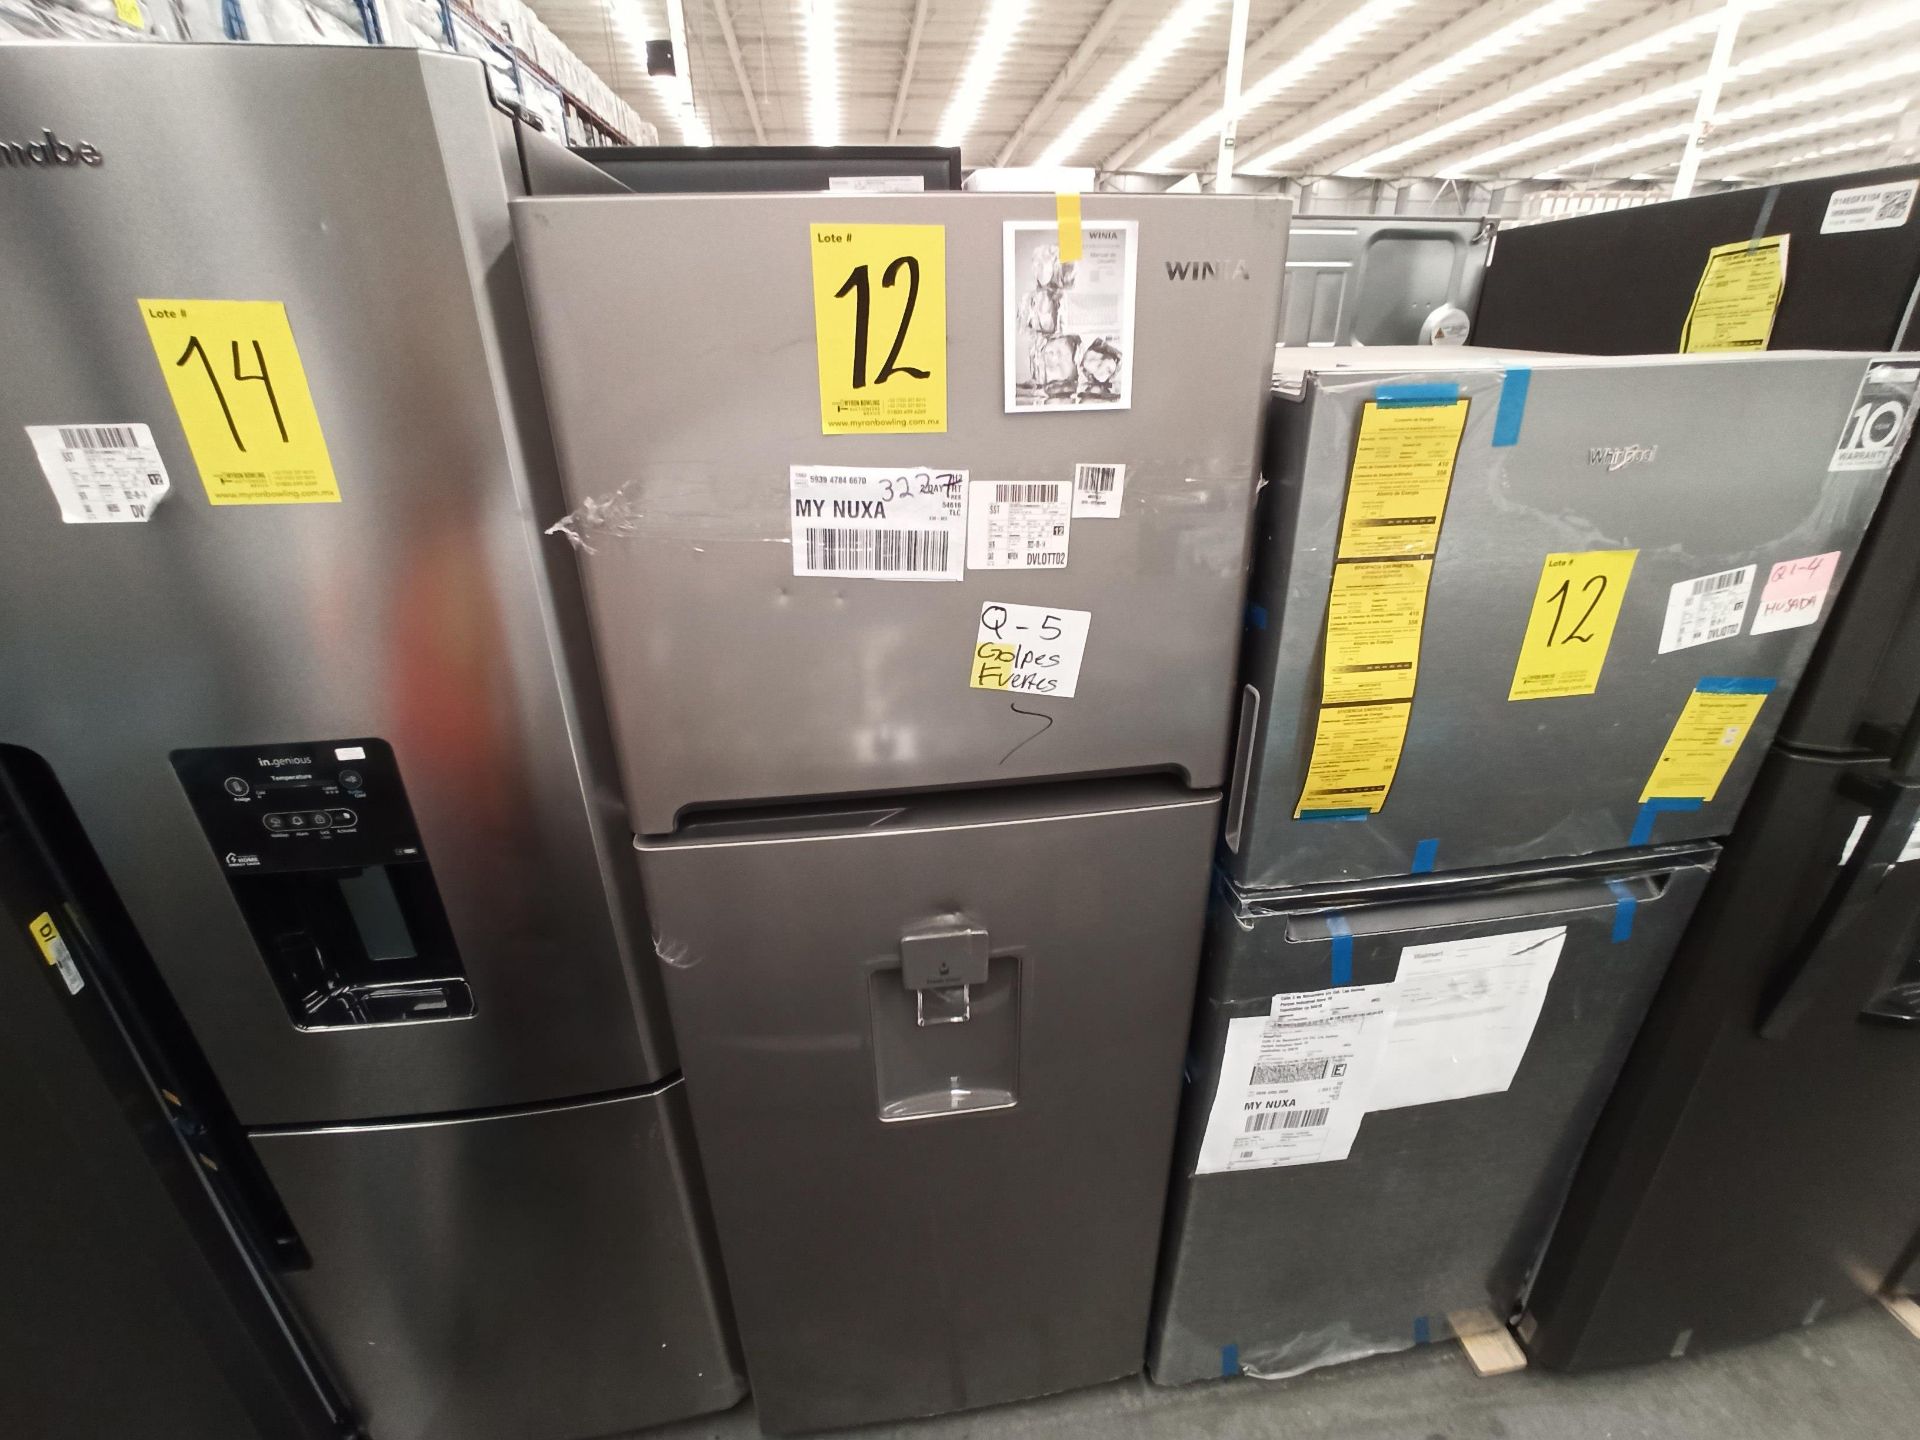 Lote de 2 refrigeradores contiene: 1 Refrigerador Marca WHIRLPOOL, Modelo WT1230K, Serie VSB3739992 - Image 11 of 18